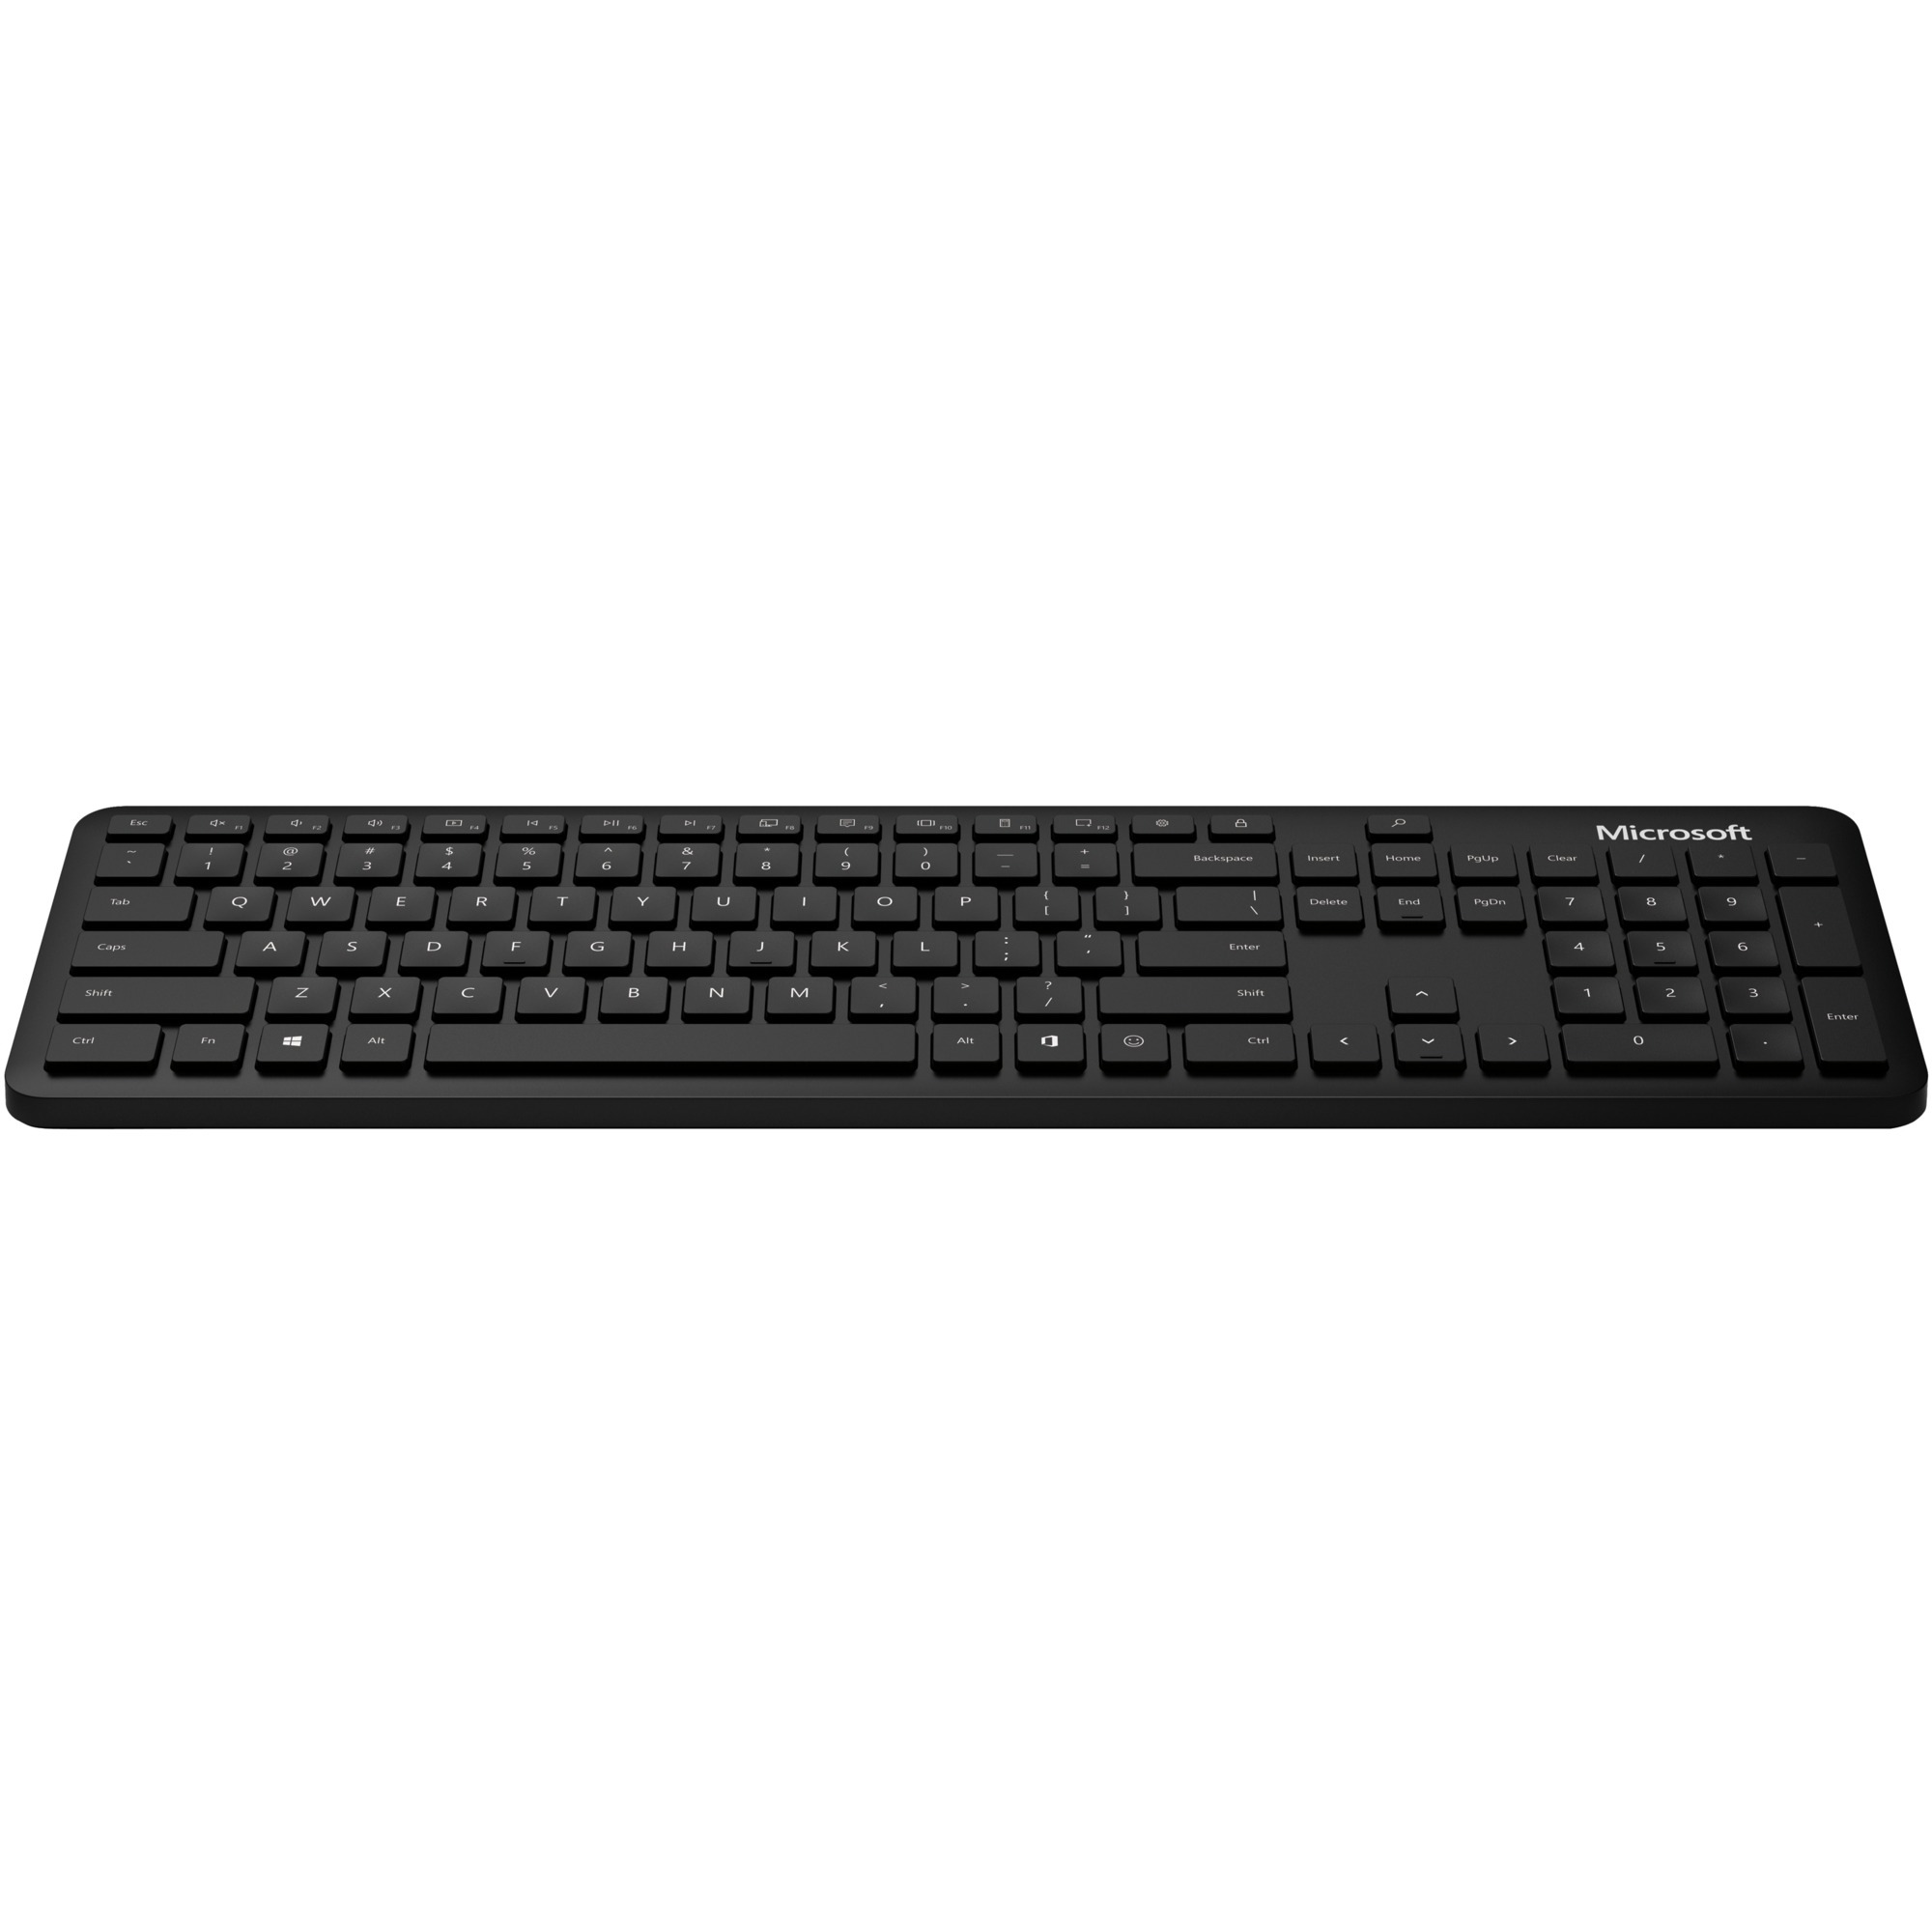 Image of Alternate - Bluetooth Keyboard, Tastatur online einkaufen bei Alternate